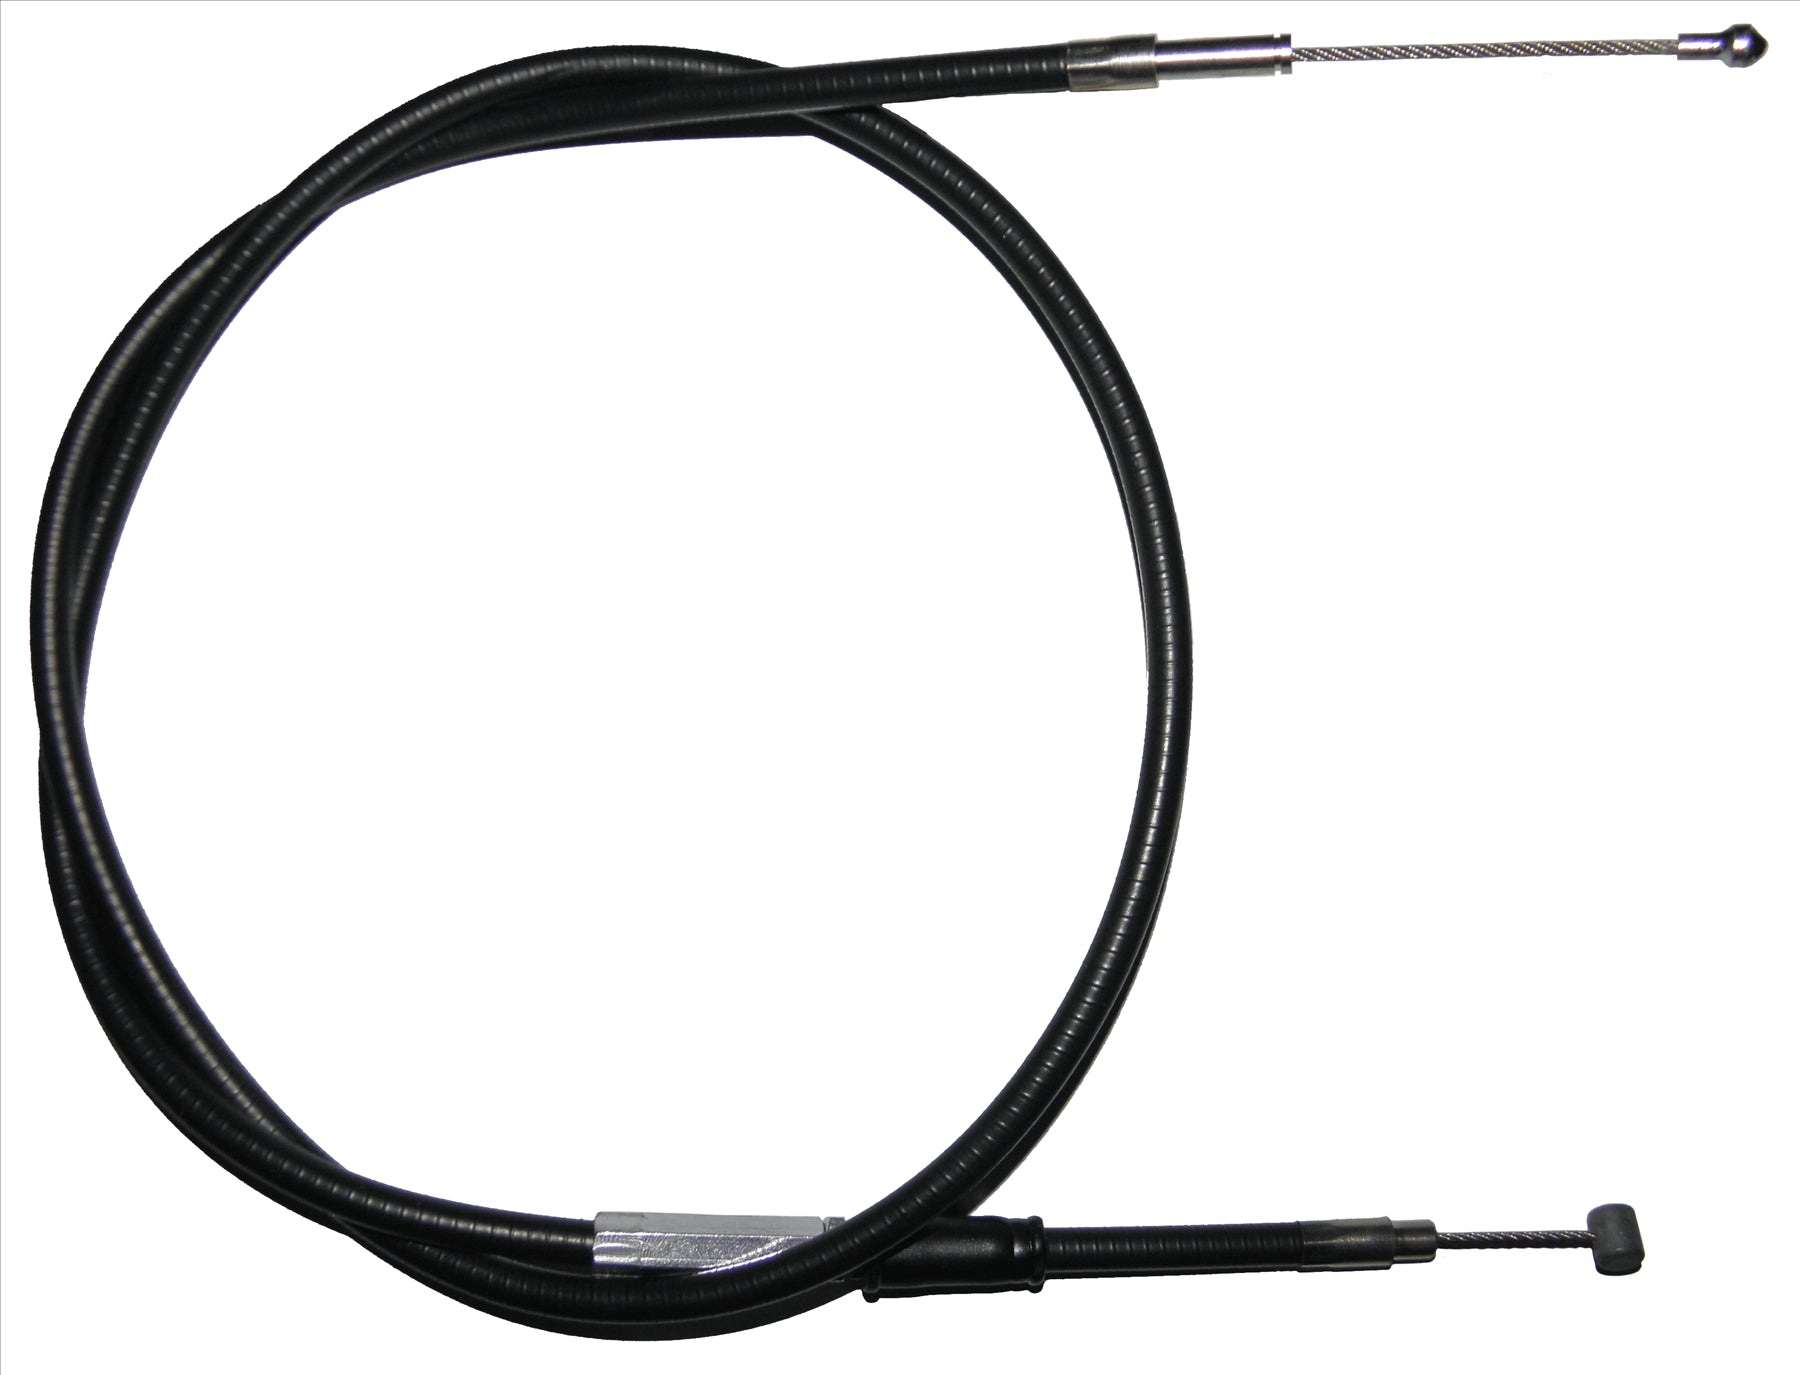 Apico Black Clutch Cable For KTM SXC 540 1999